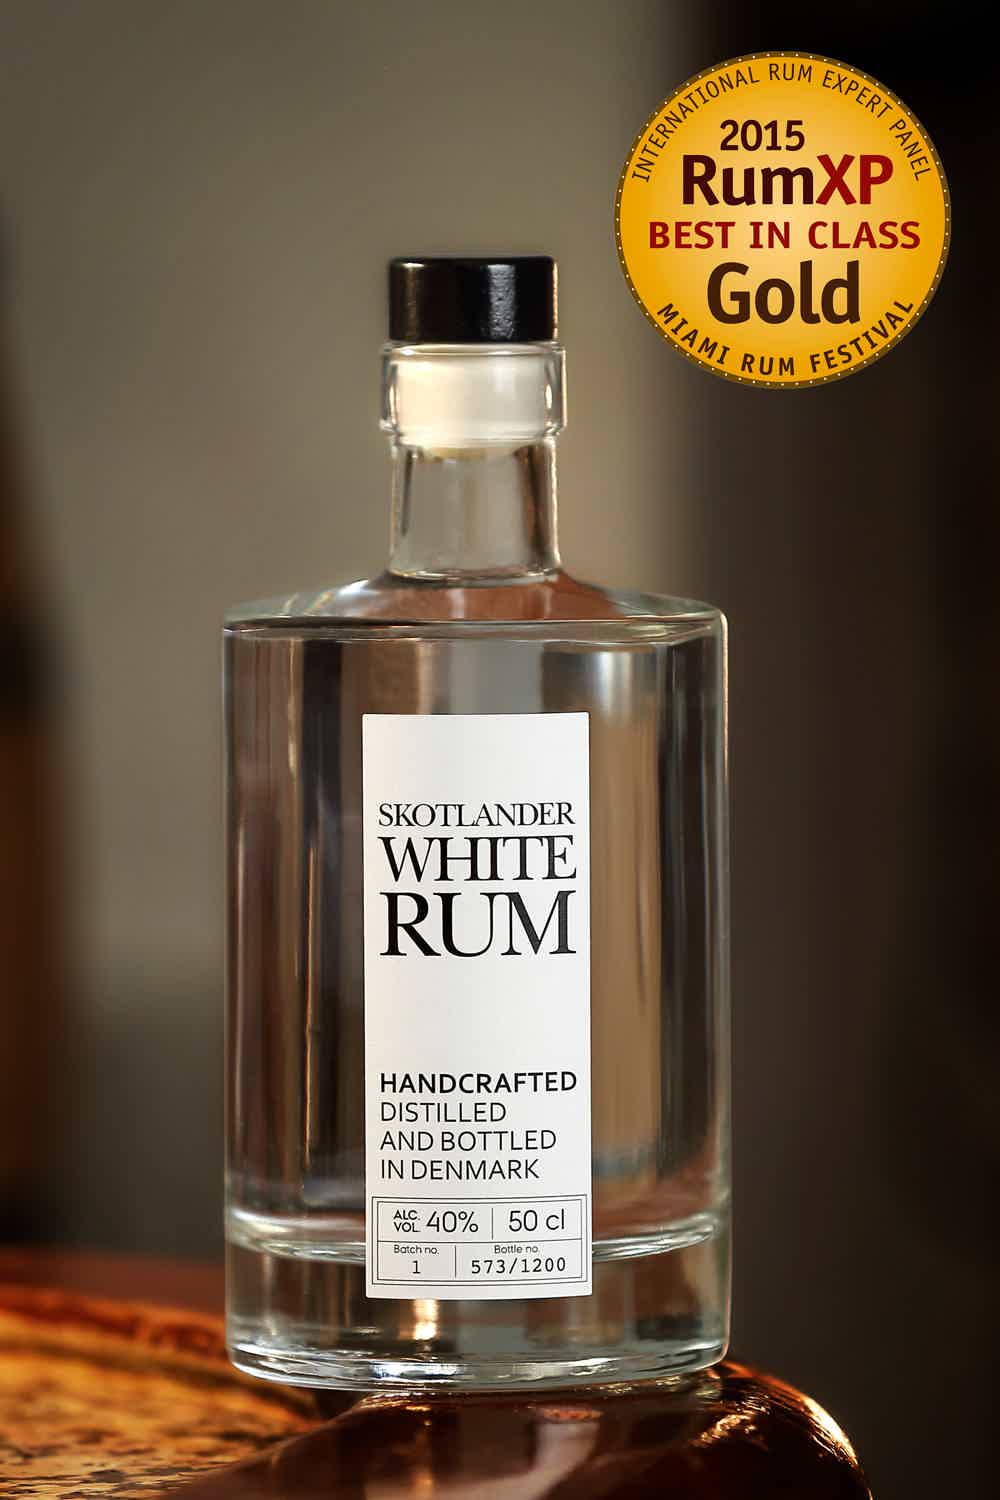 Skotlander White Rum